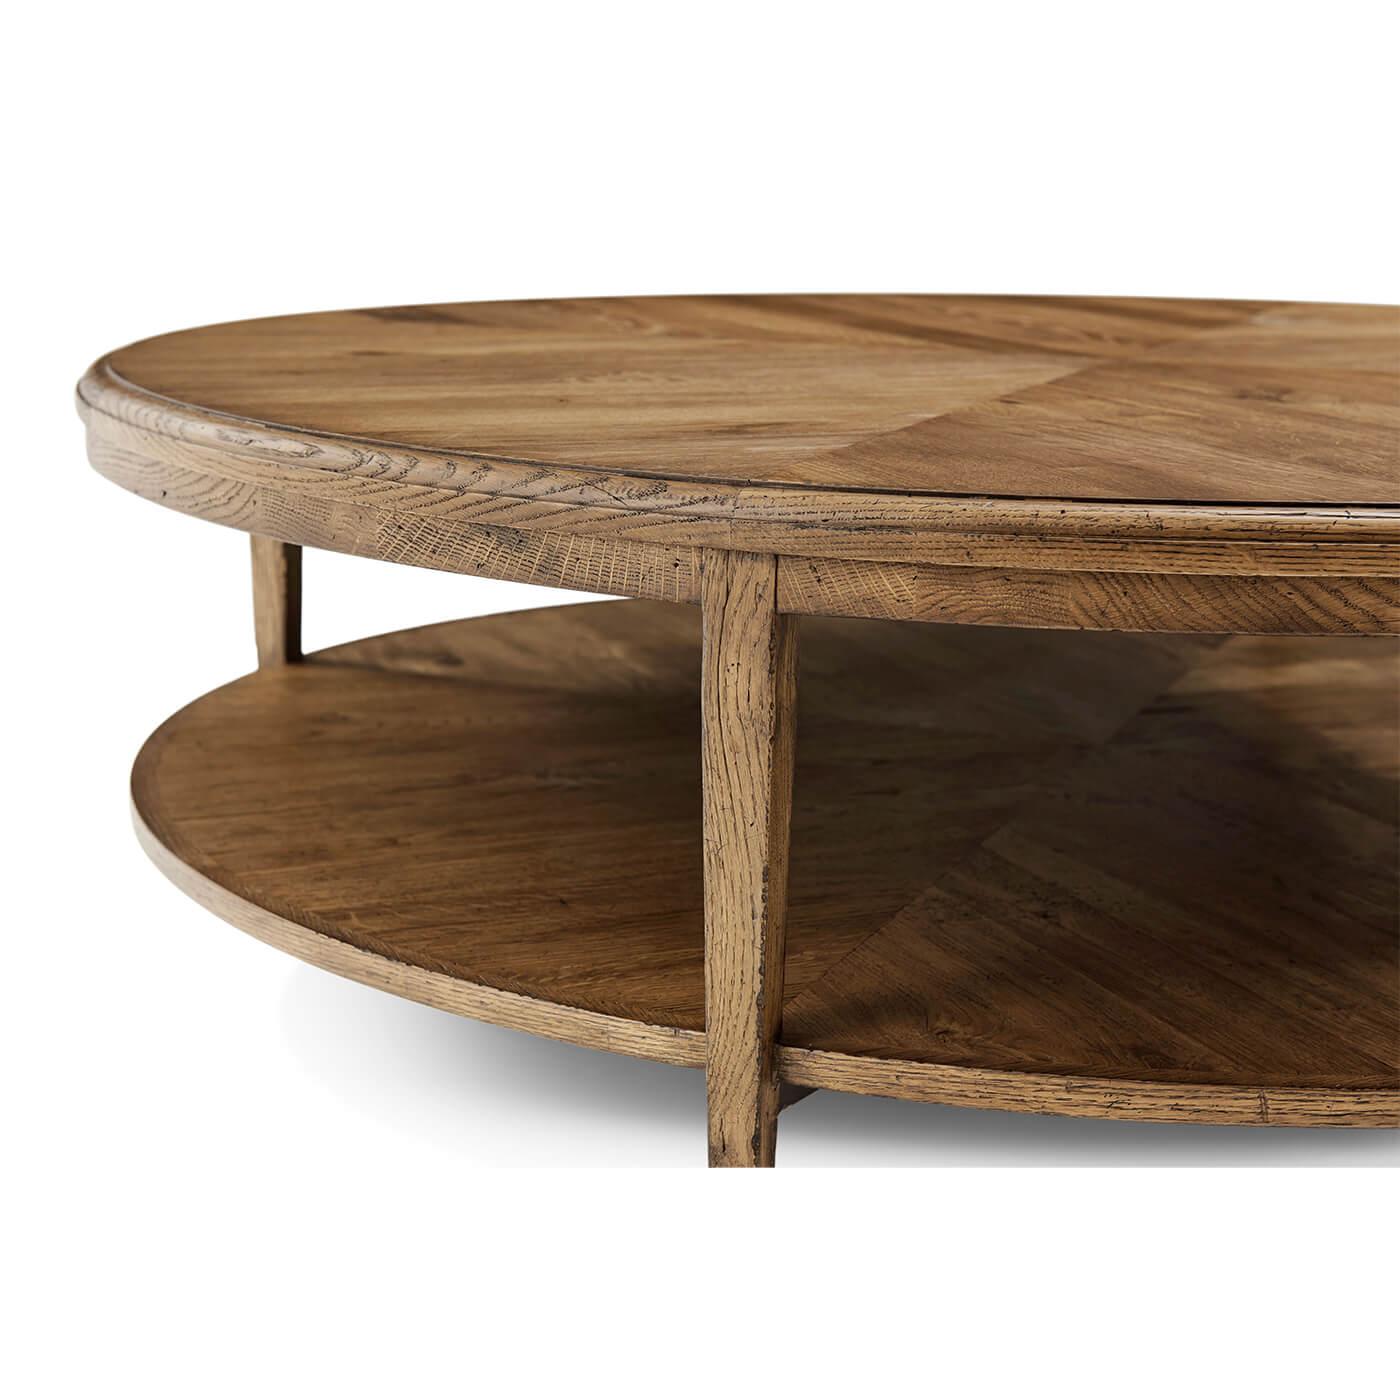 Table basse ronde moderne en parquet de chêne clair avec une assise concentrique en chêne sur un pied conique en chêne. Finition en chêne clair Dawn.

Dimensions : 52